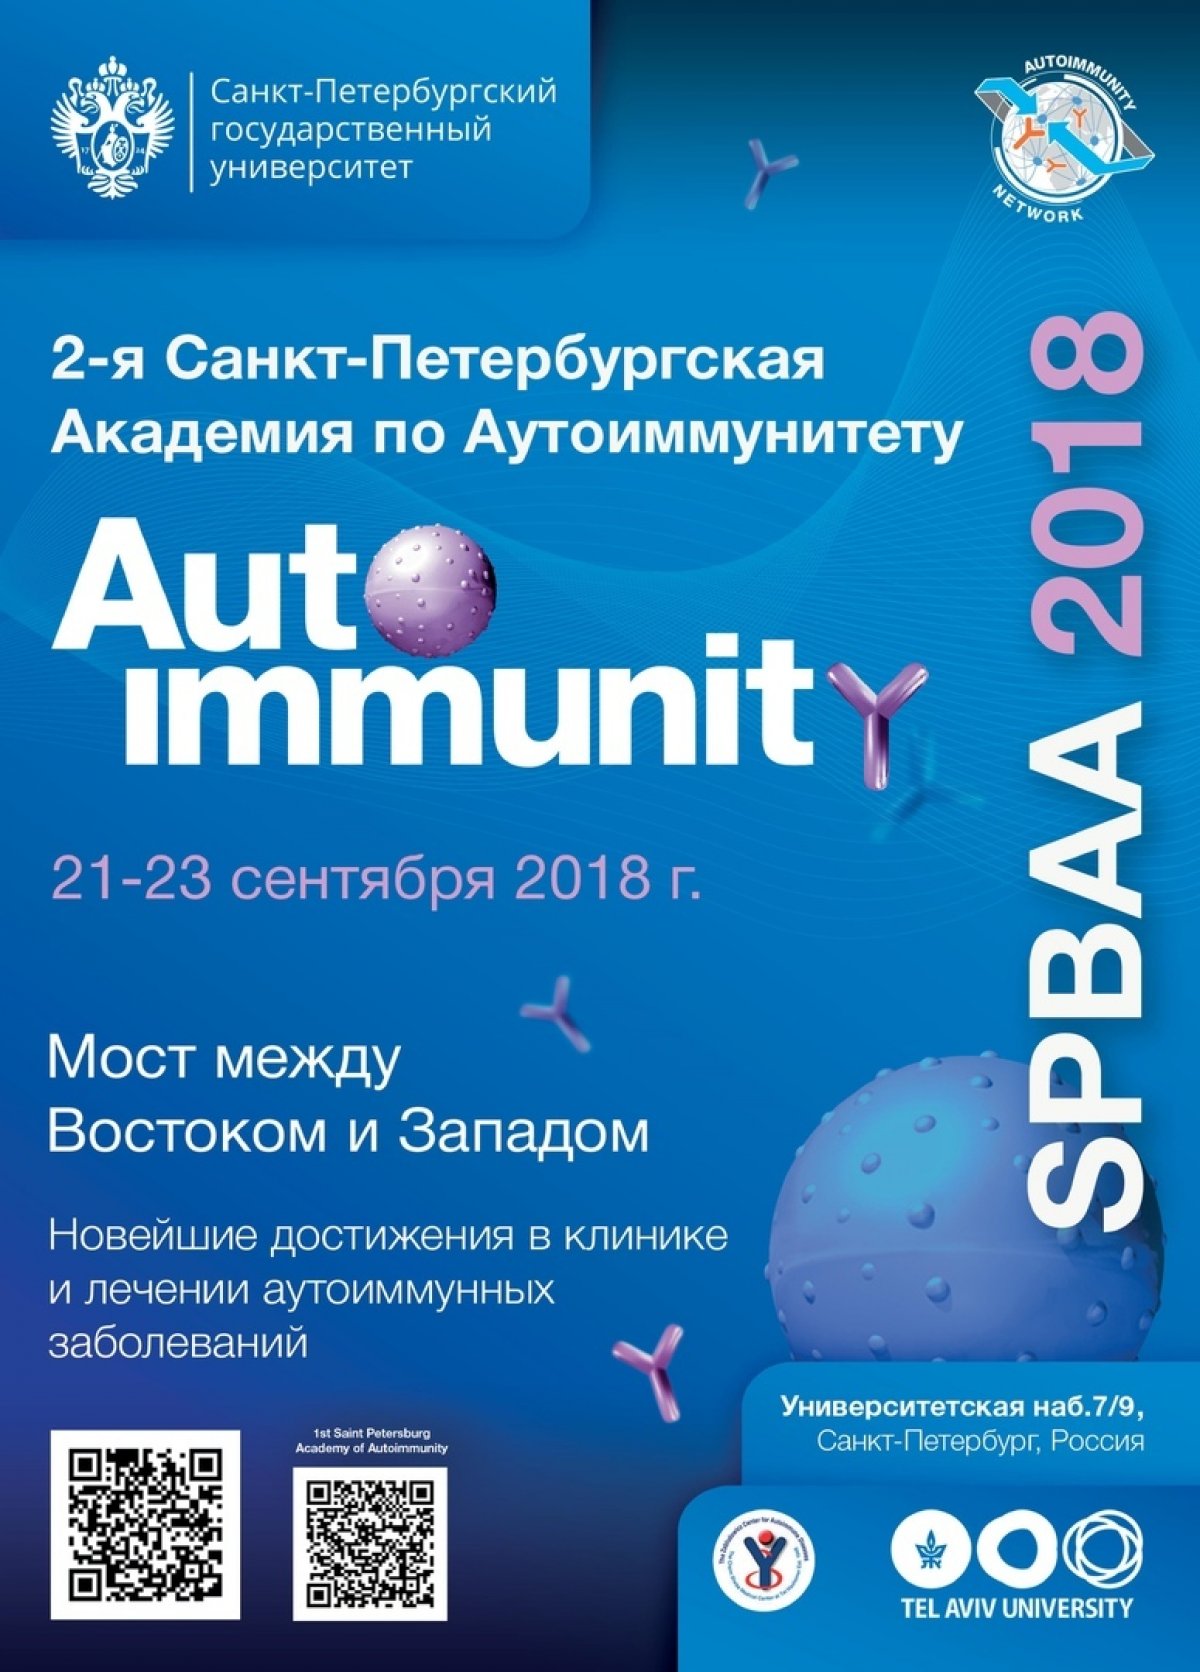 Приглашаем принять участие во Второй Санкт-Петербургской Академии Аутоиммунитета (SPBAA 2018) – международном образовательном событии, которое состоится в Санкт-Петербурге 21- 23 сентября 2018 года.